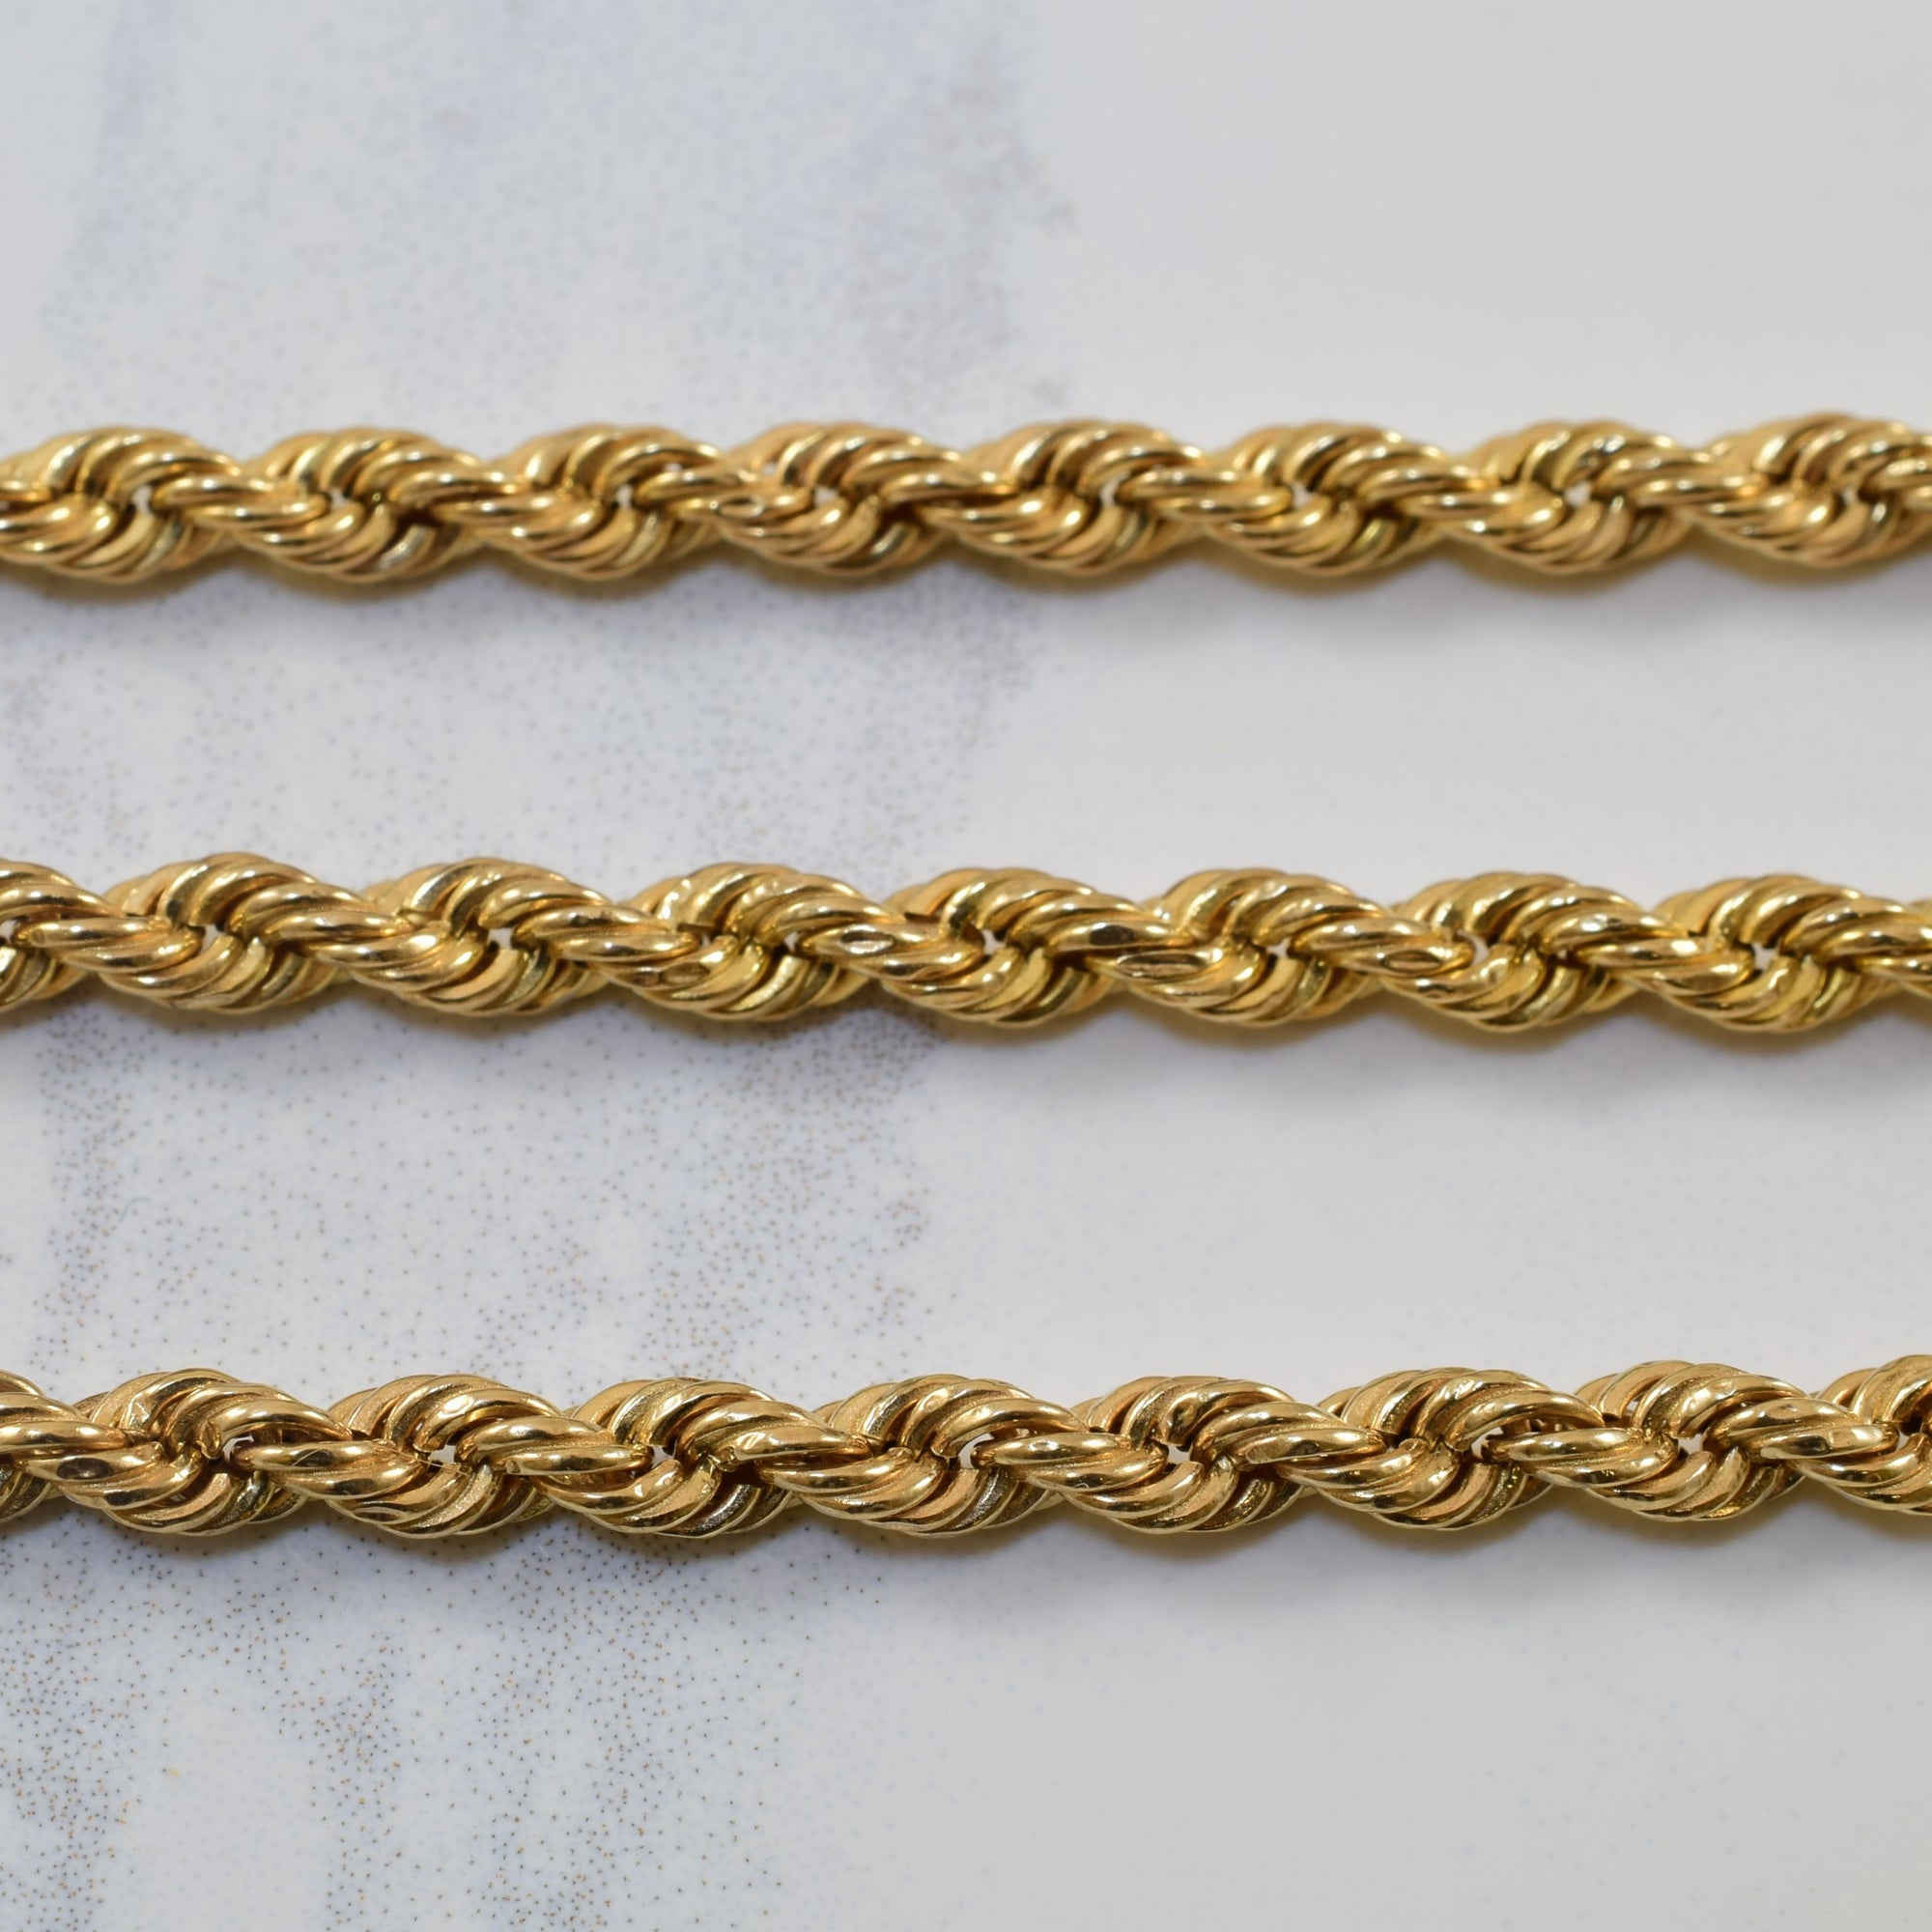 10k Yellow Gold Rope Chain | 30